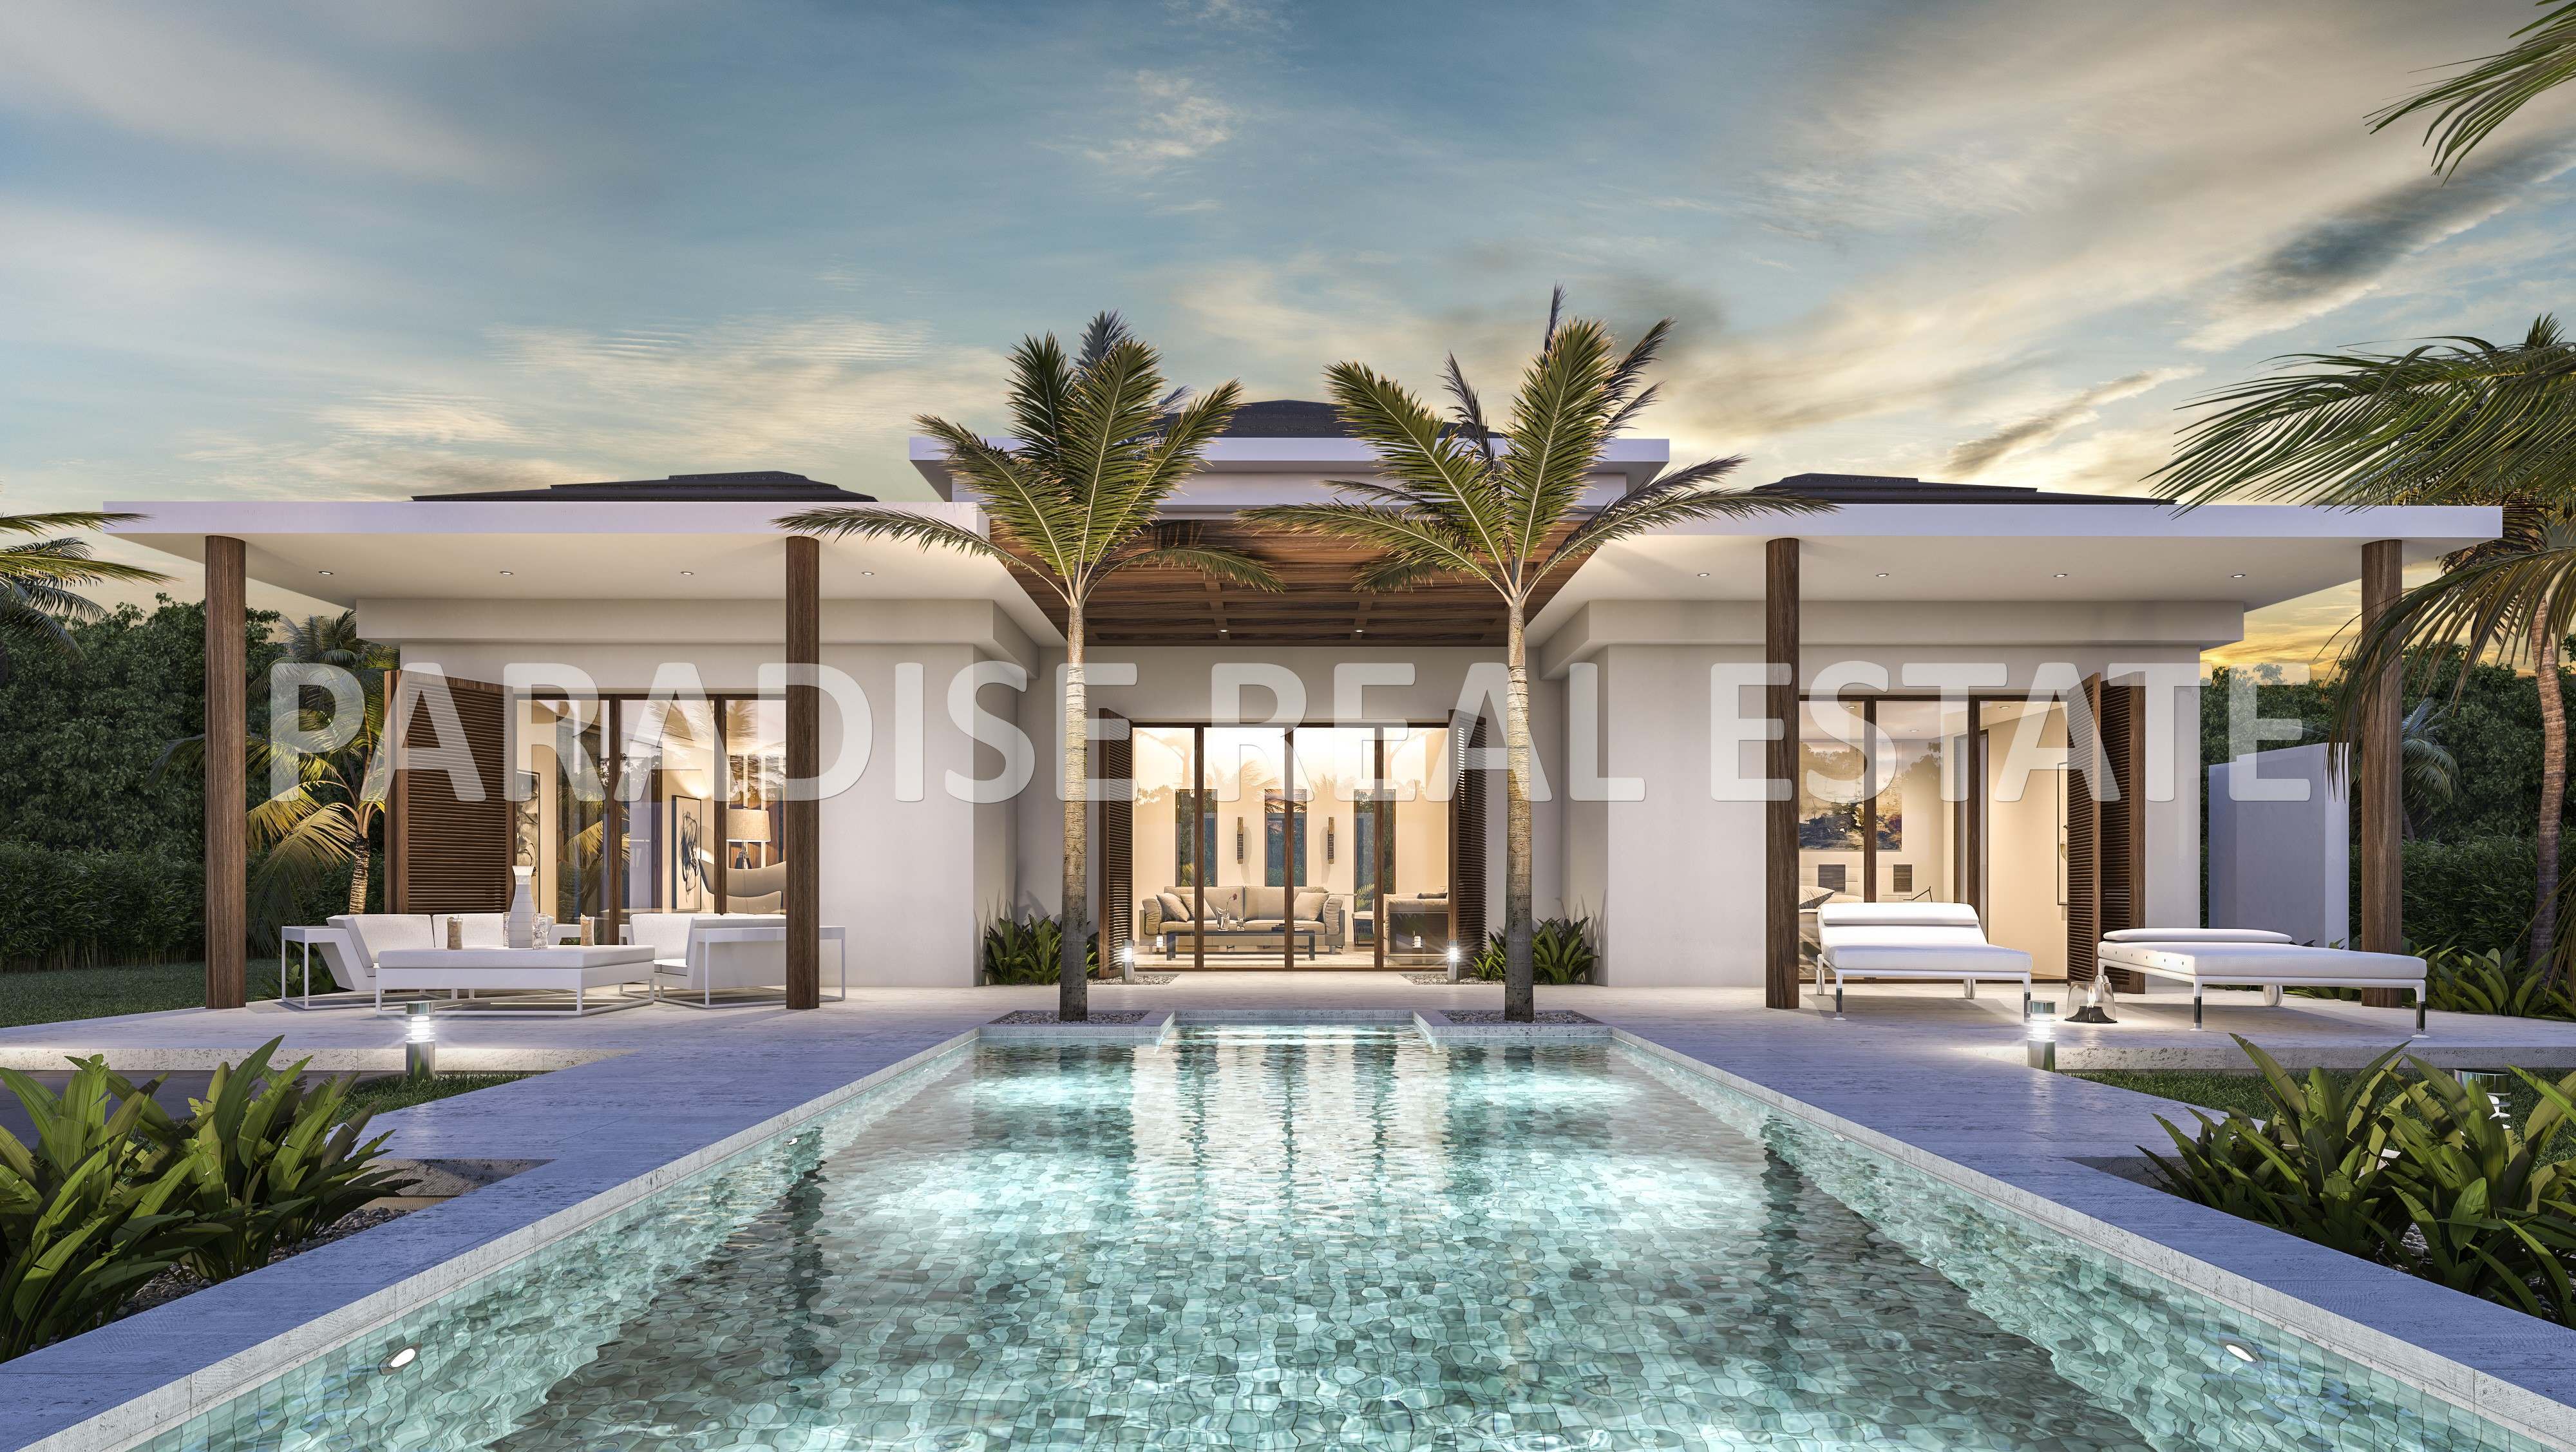 Villa till salu i La Cala Javea i Modern lyx balinesisk stil